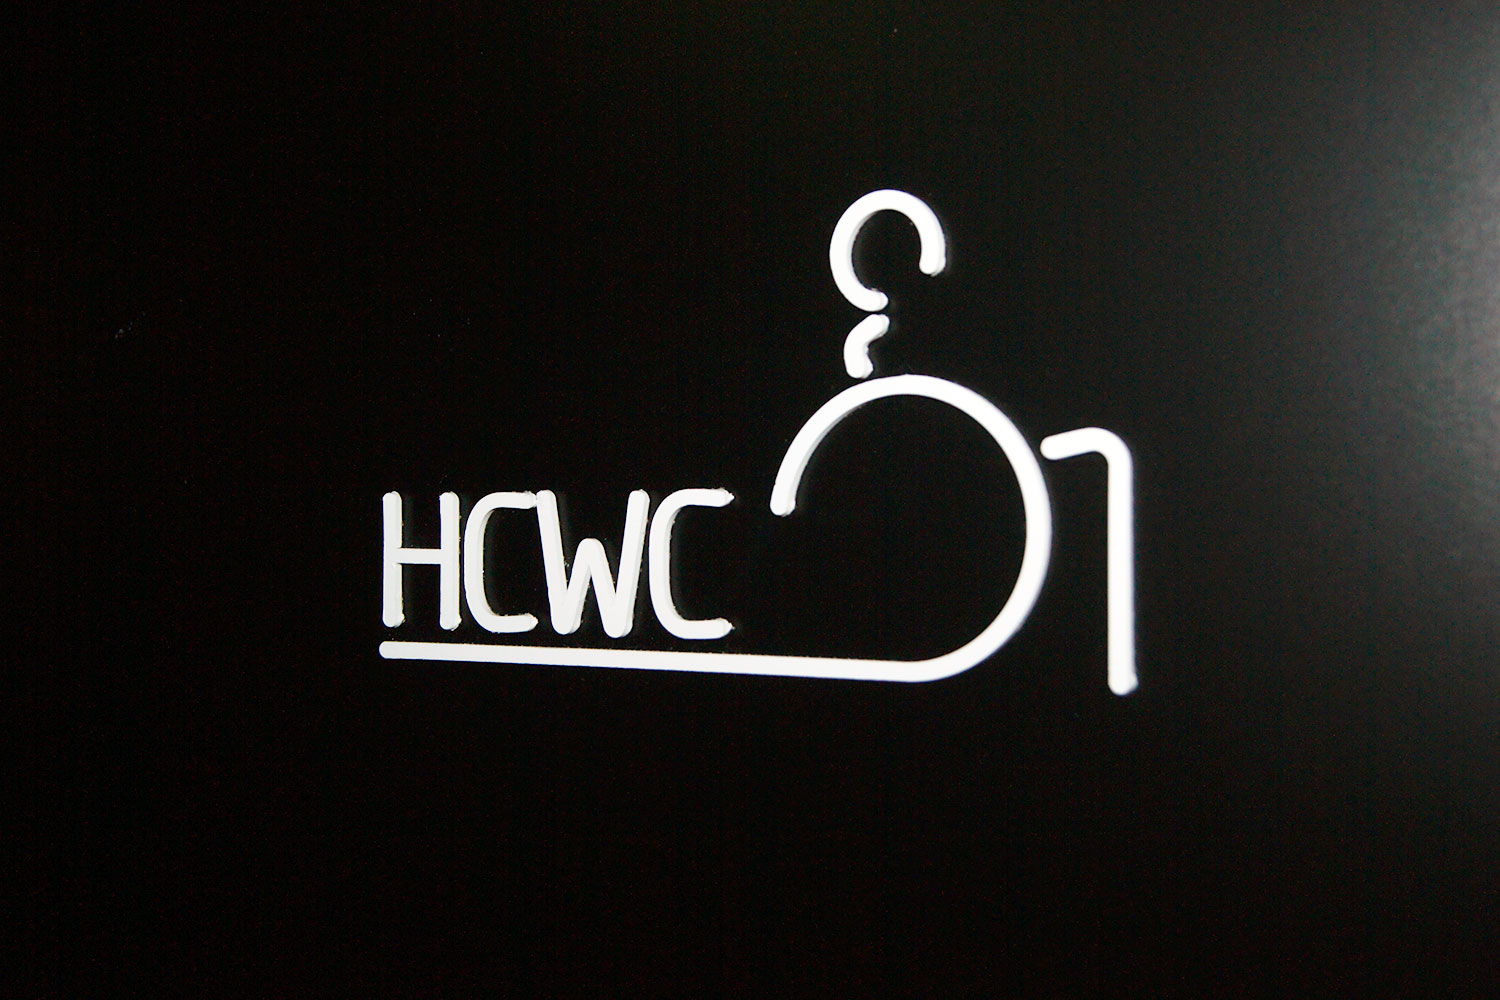 hcwc skilt på vegg